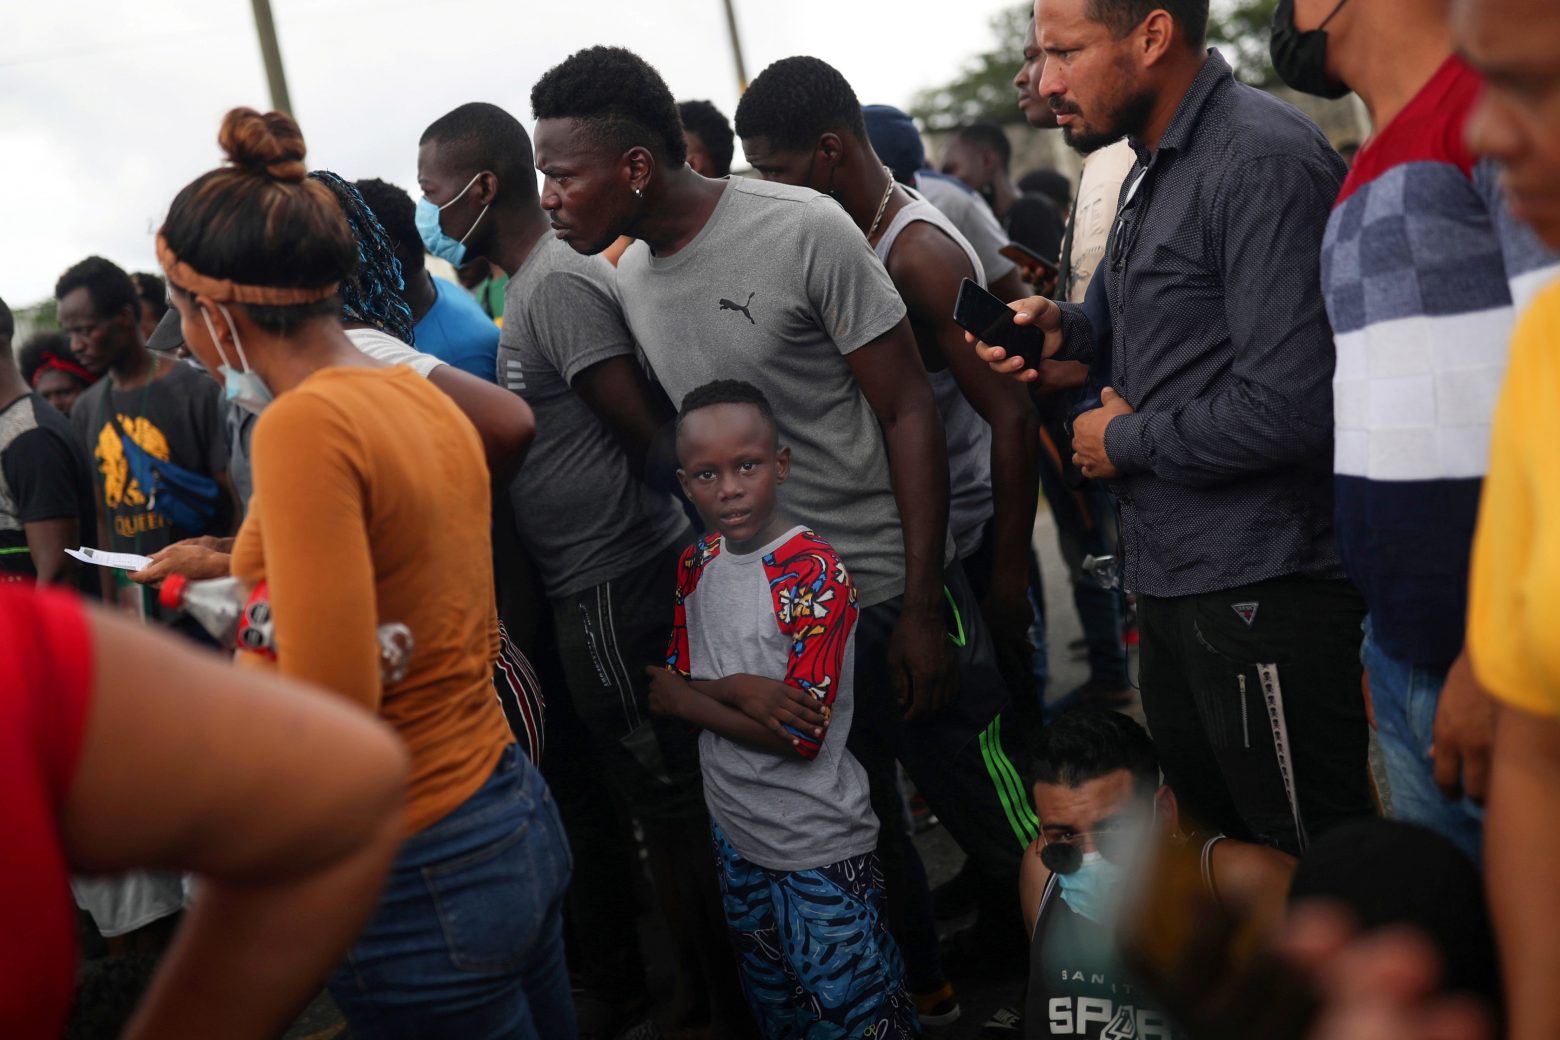 ΗΠΑ - Αντιδράσεις για τις απελάσεις Αϊτινών - Τη βαθιά ανησυχία του εξέφρασε και ο ΟΗΕ